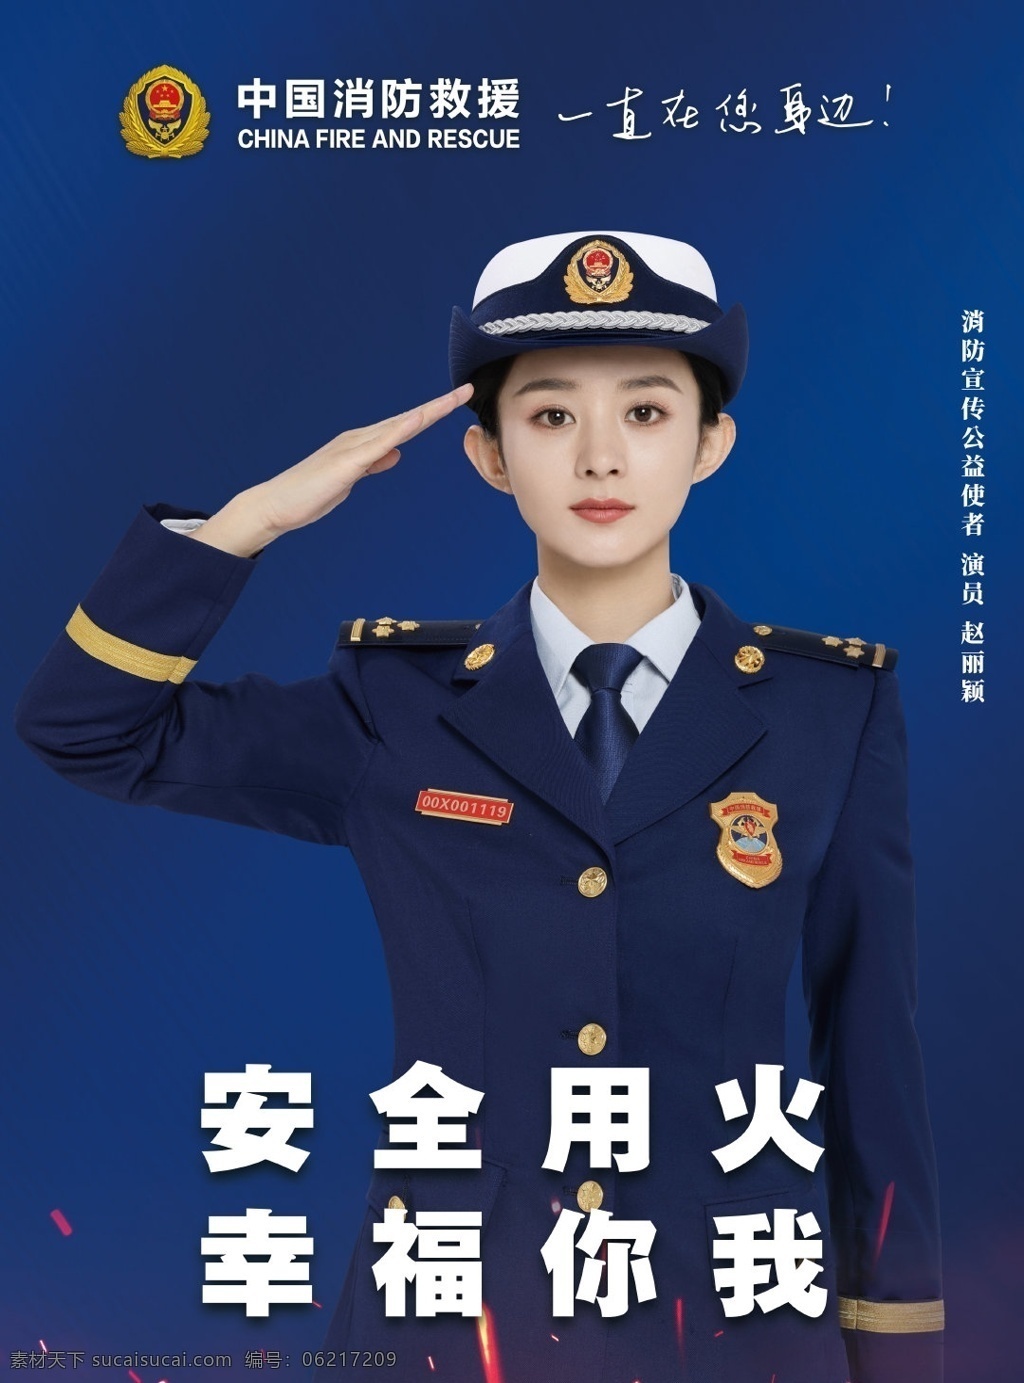 中国 消防 救援 消防救援 中国消防 安全用火 公益宣传 消防公益